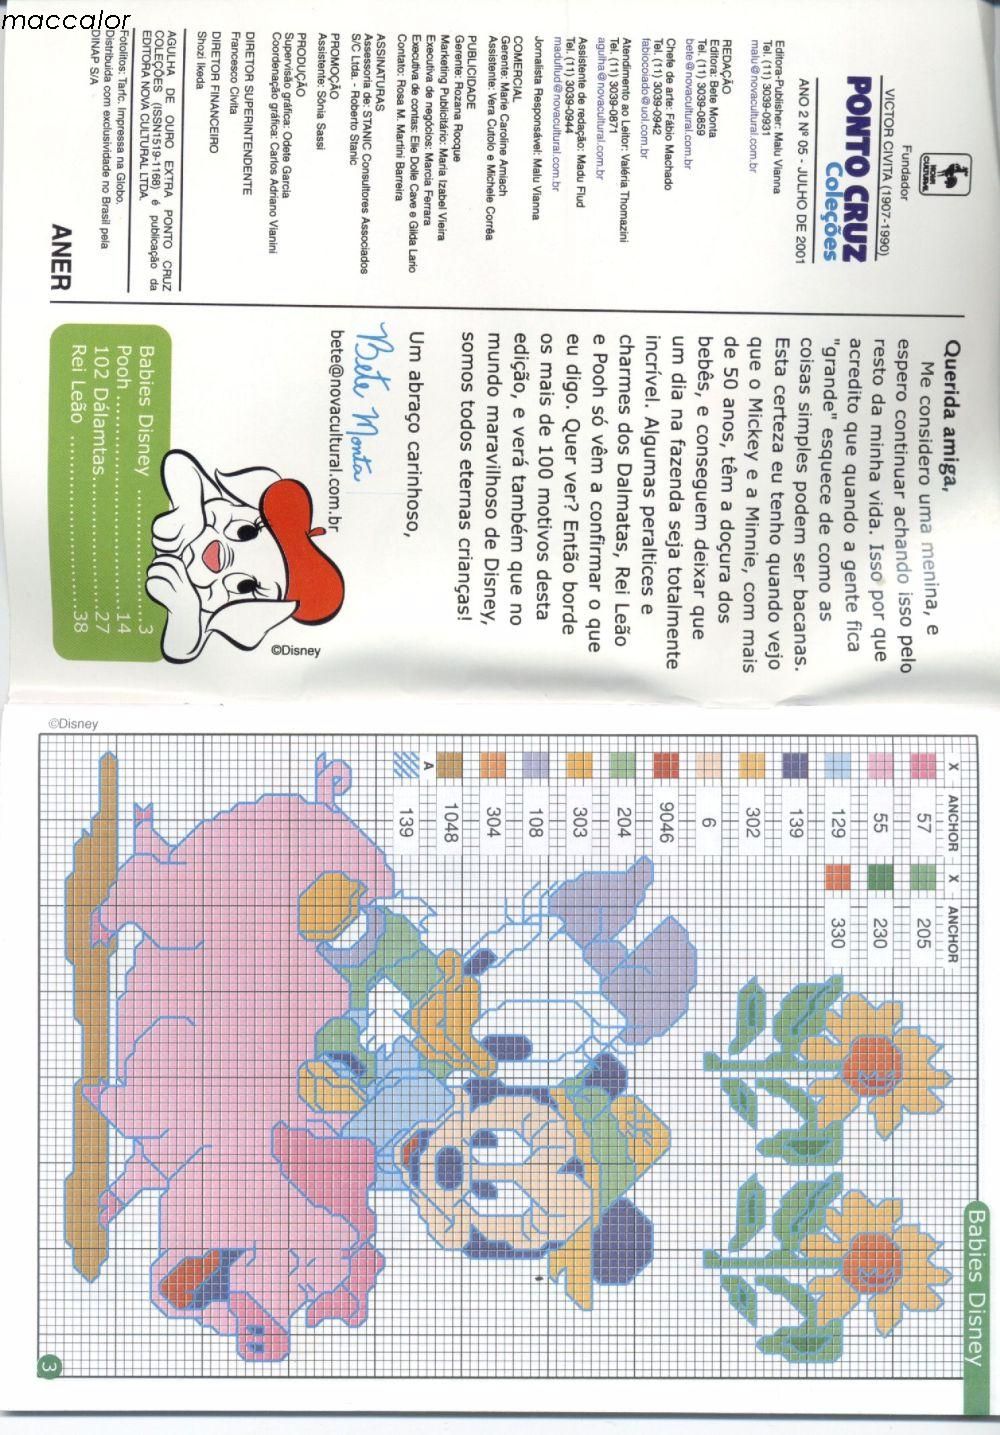 Beautiful Disney cross stitch patterns (5)